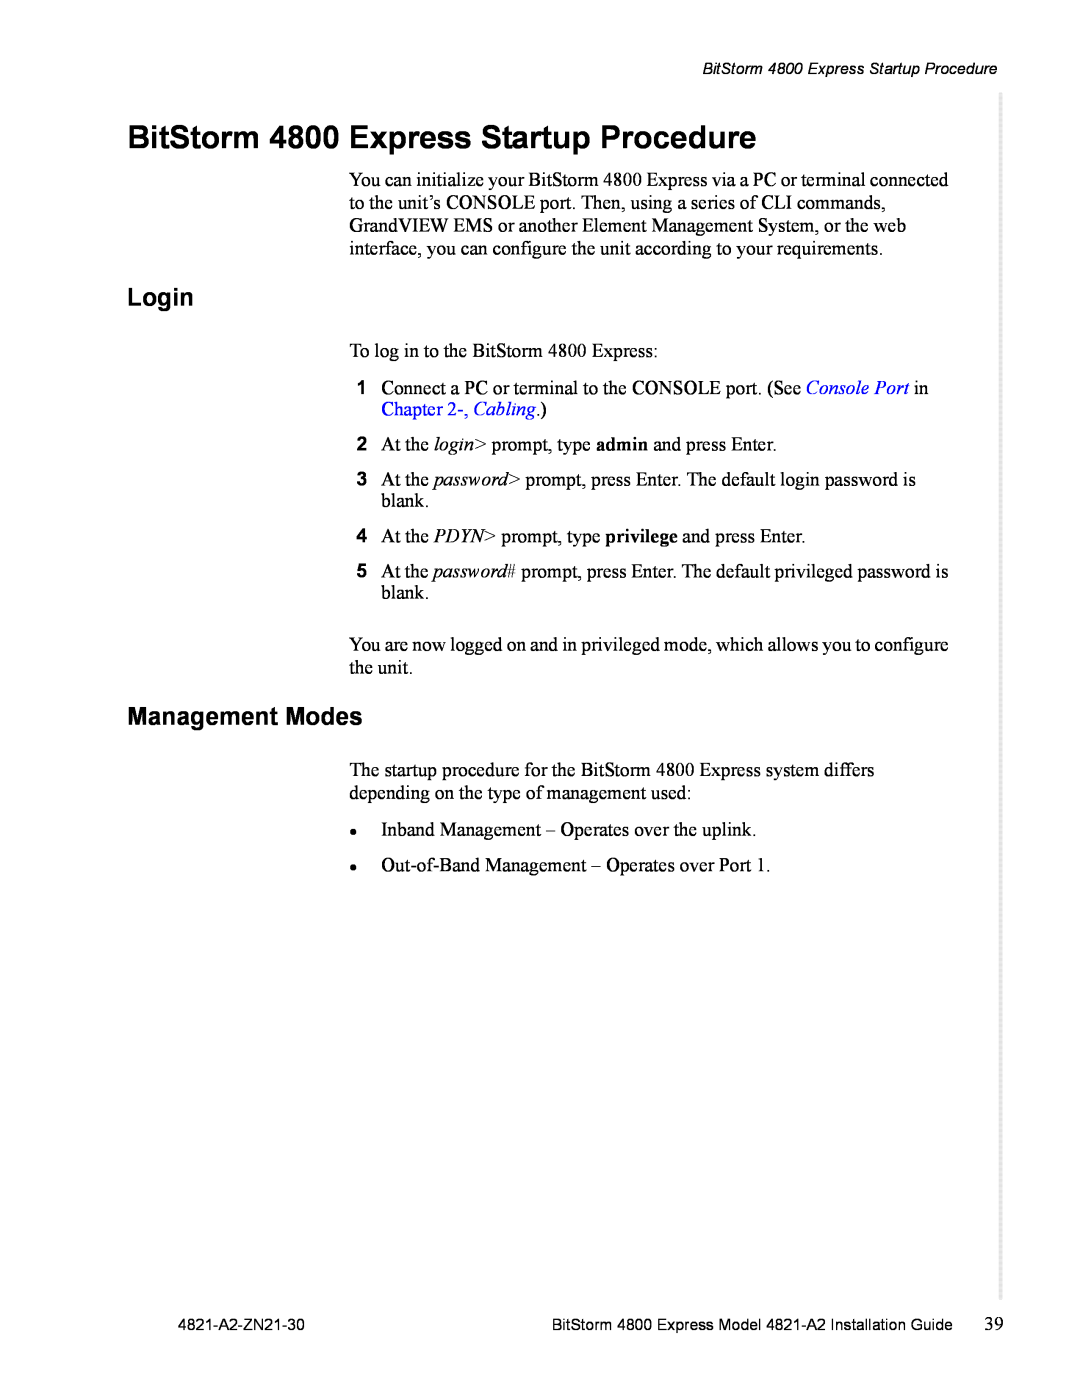 Zhone Technologies 4821-A2 manual BitStorm 4800 Express Startup Procedure, Login, Management Modes 